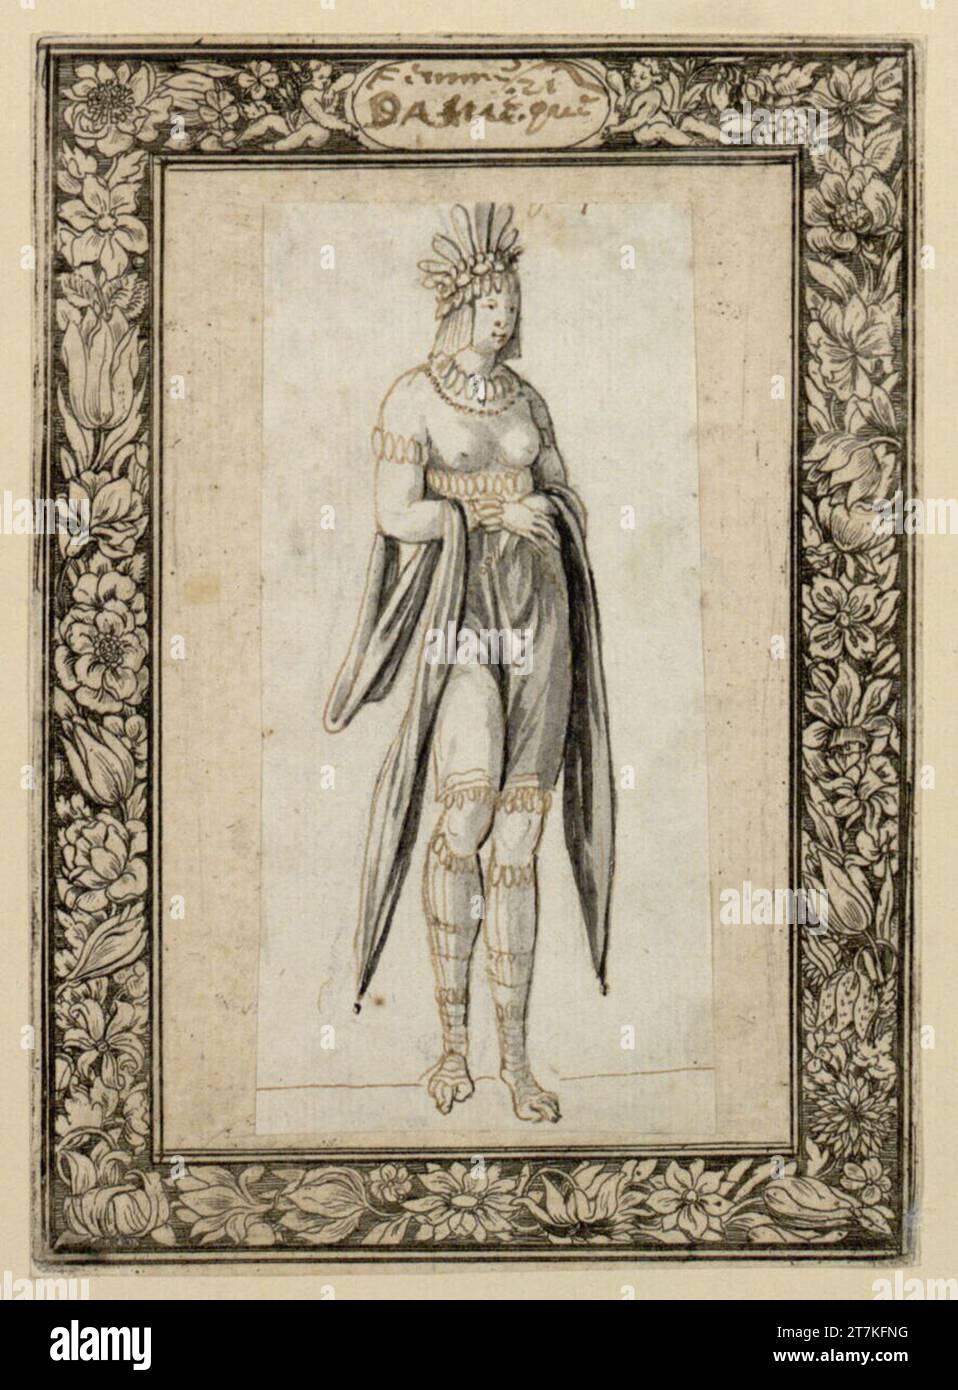 Sébastien le Clerc InDerin Aus Africa. Feder di colore marrone, grigio lavato; incollato su una foglia con una striscia decorativa forata (filo di fiori) zwischen 1650 und 1664 Foto Stock